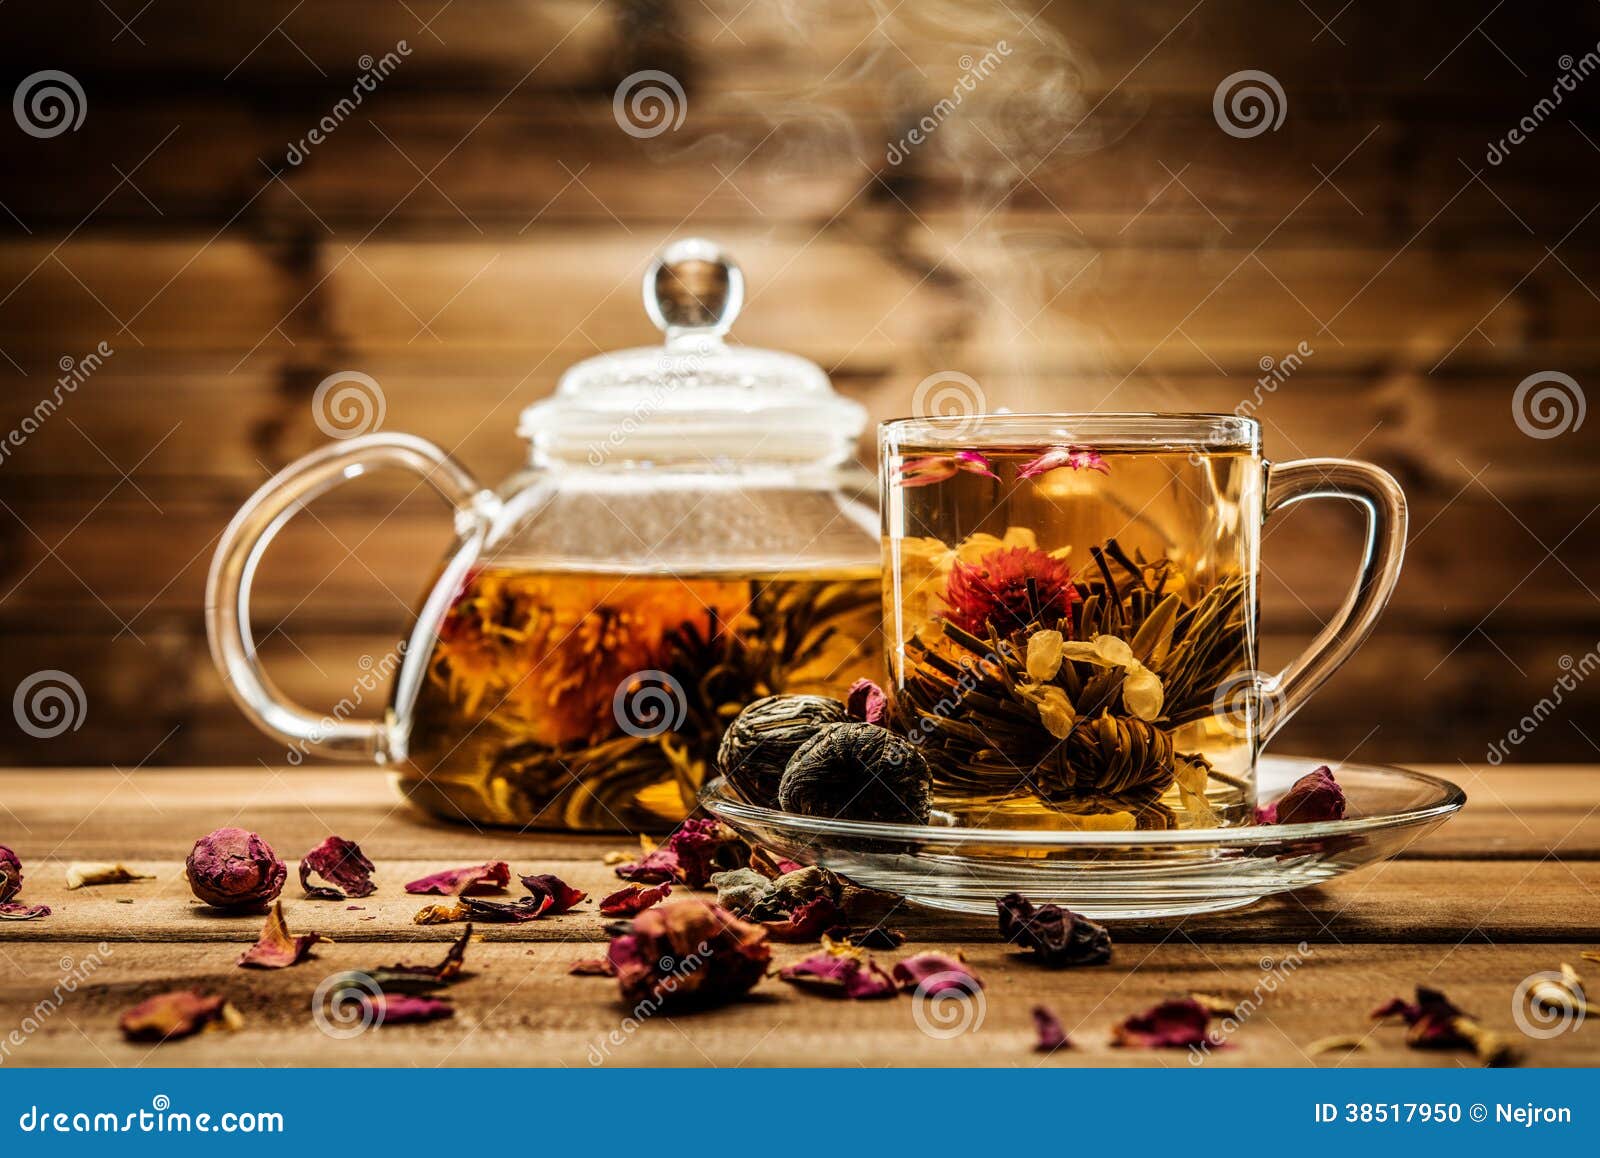 tea still-life